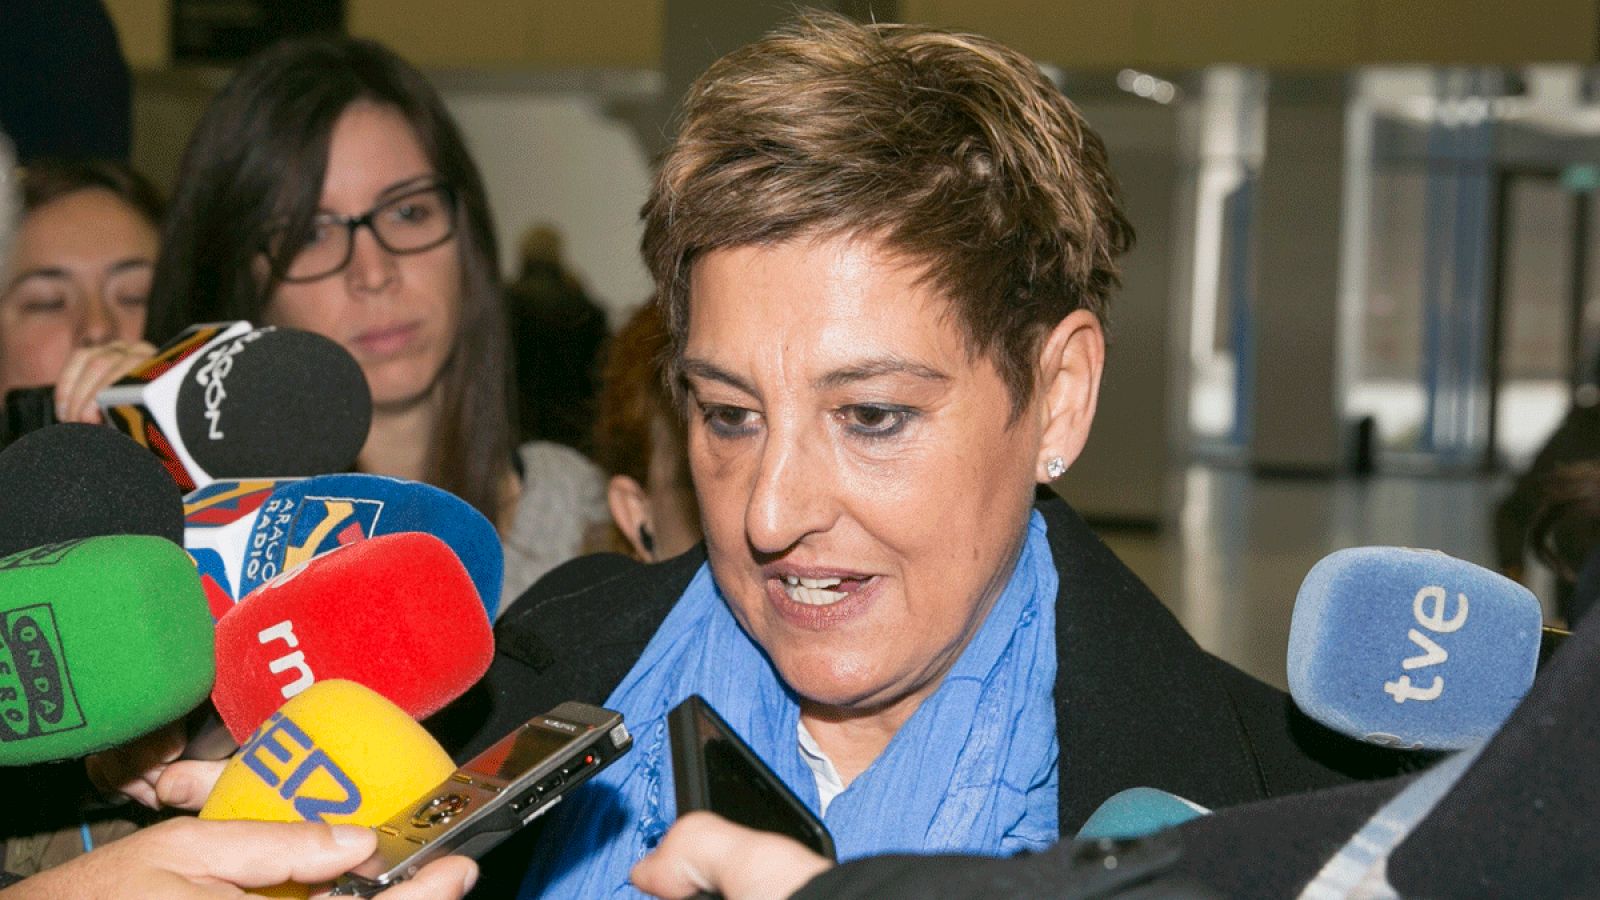 María Victoria Pinilla exalcaldesa de La Muela en Zaragoza declara por presunta corrupción urbanística